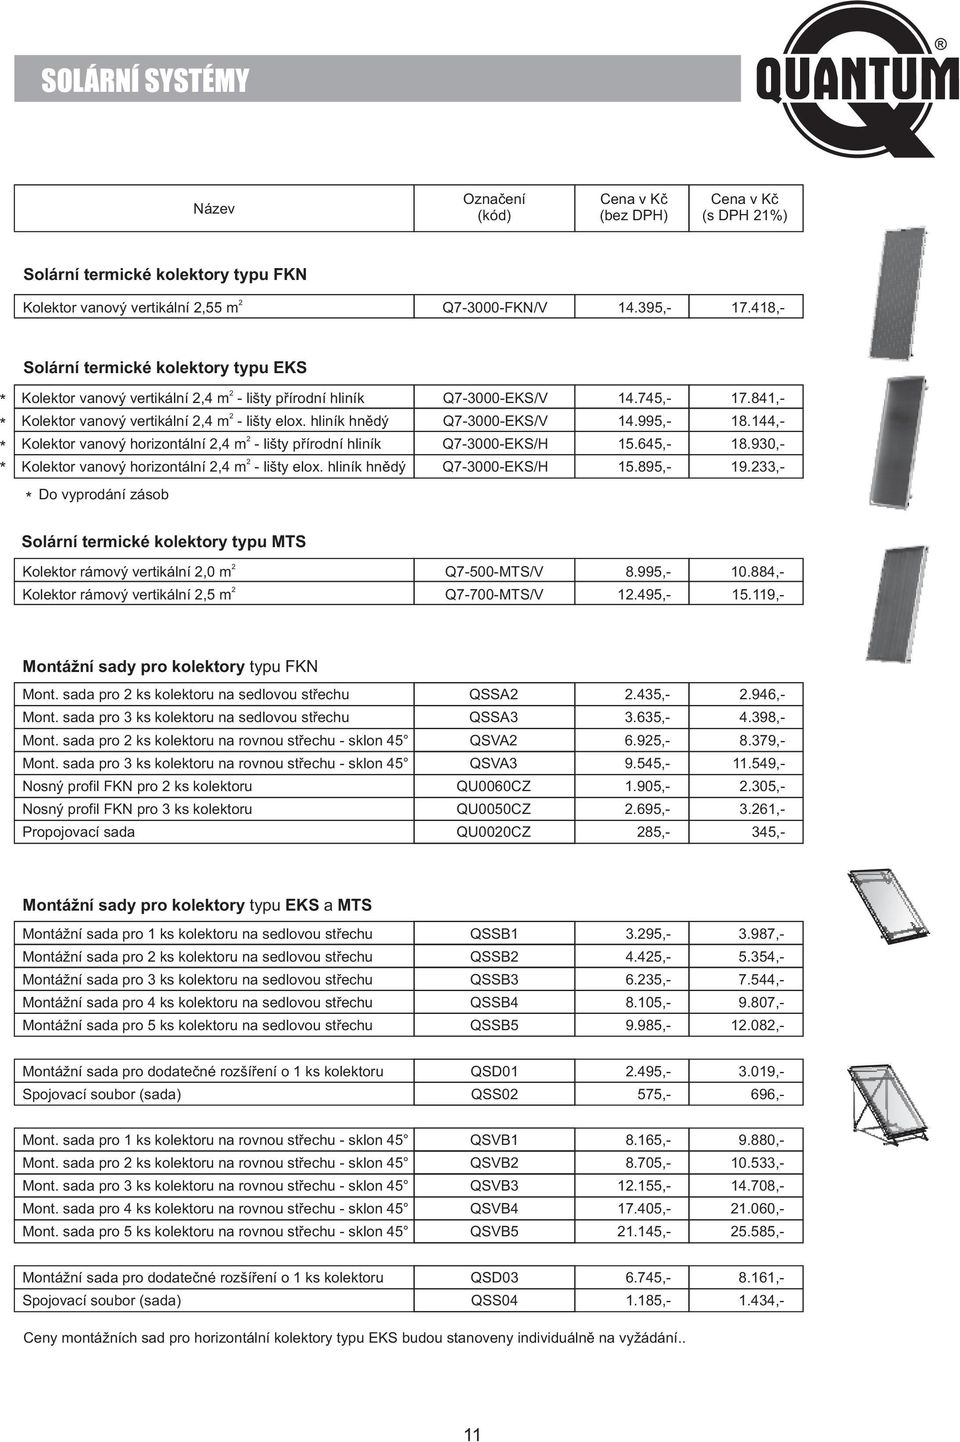 hliník hnědý Q7-3000-EKS/V 14.995,- 18.144,- Kolektor vanový horizontální,4 m - lišty přírodní hliník Q7-3000-EKS/H 15.645,- 18.930,- Kolektor vanový horizontální,4 m - lišty elox.